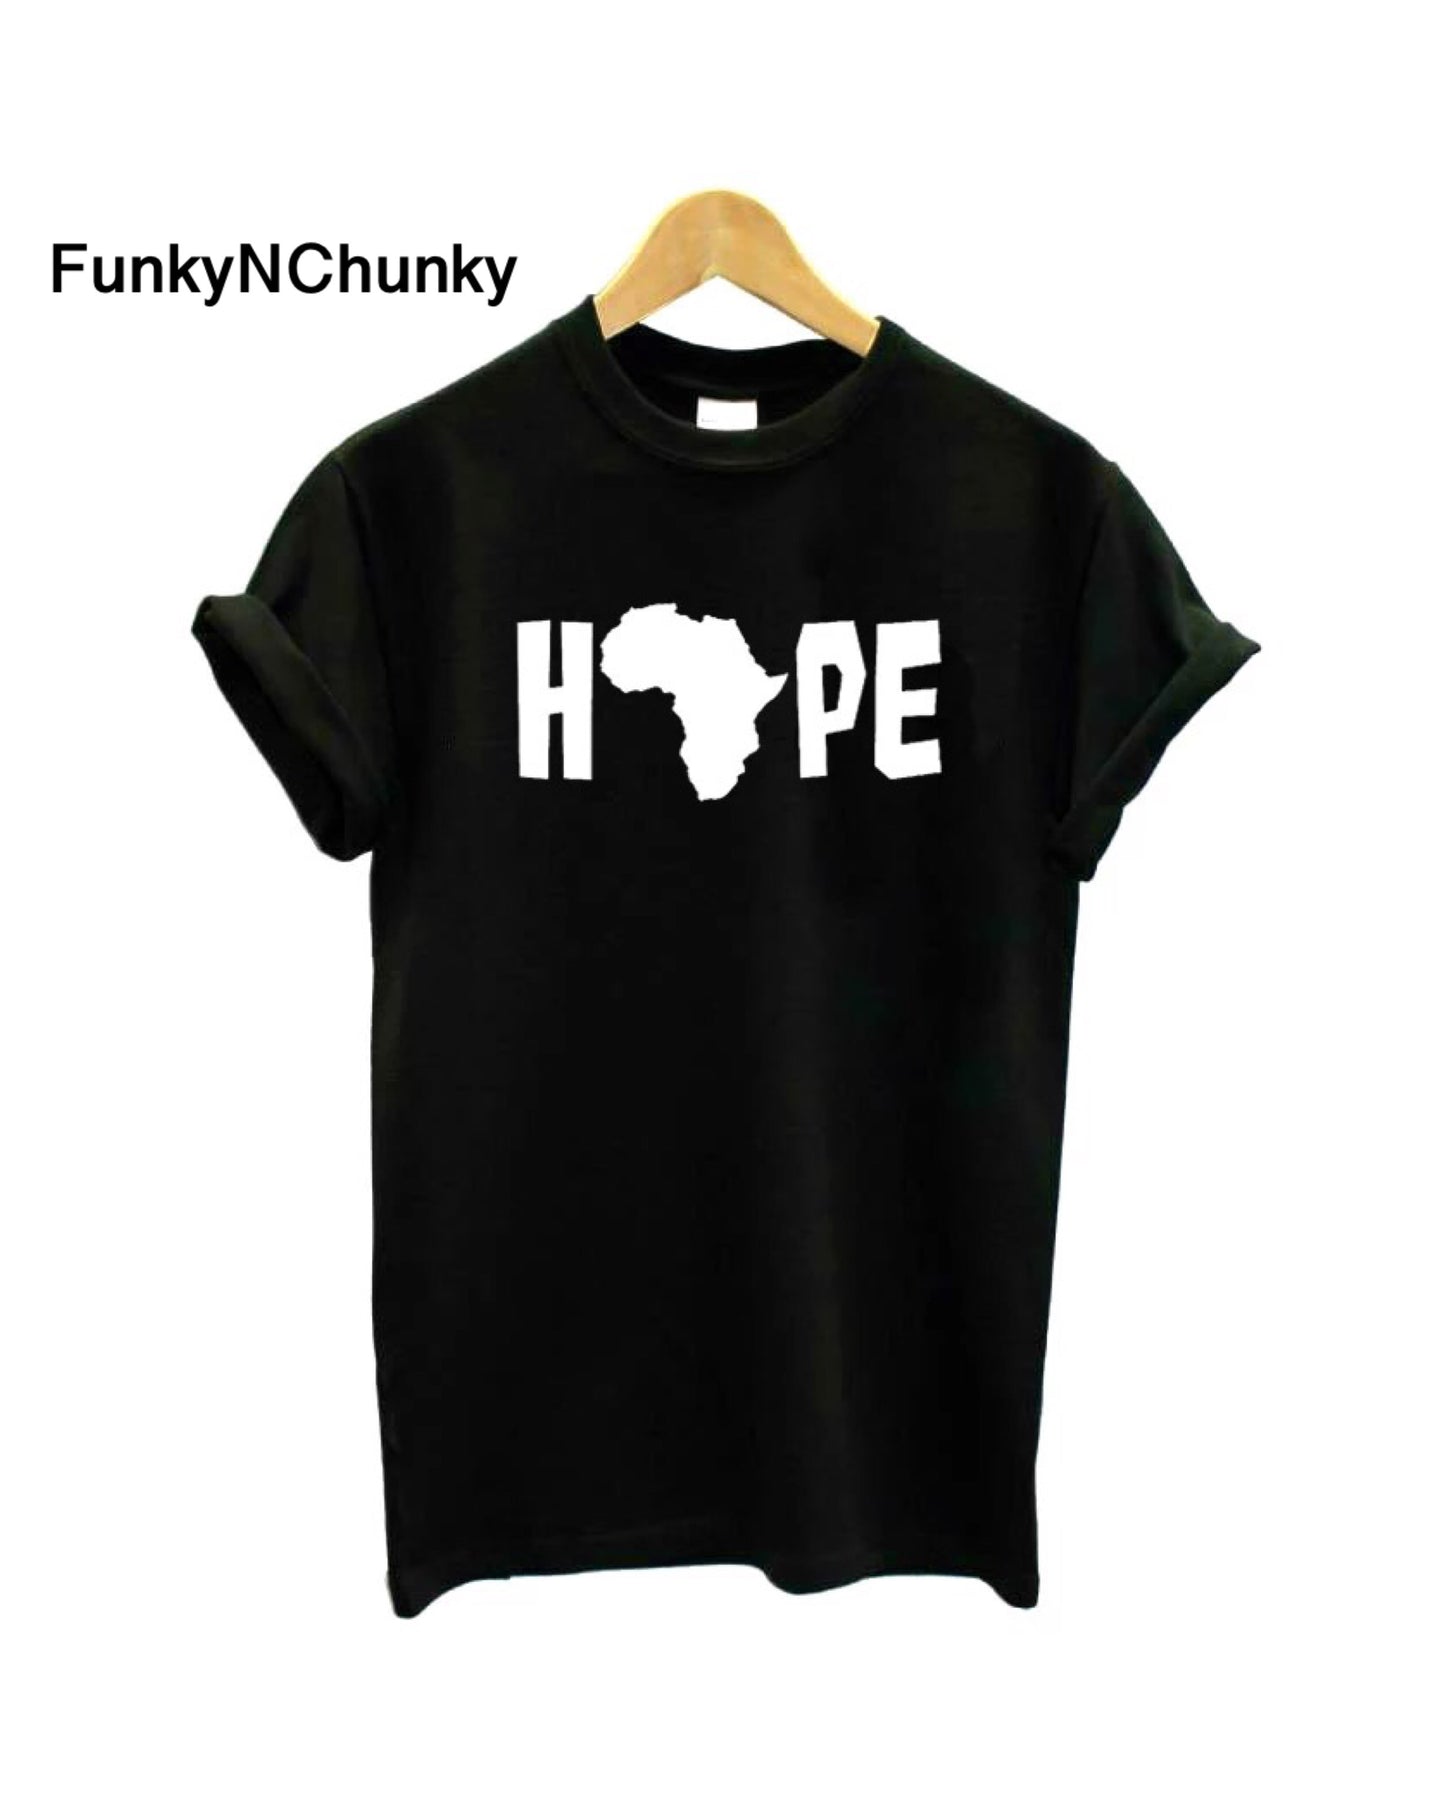 Hope africa t-shirt